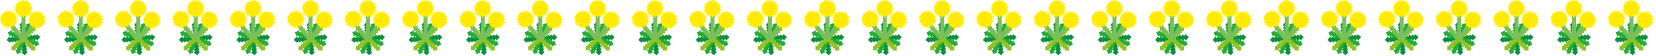 春の花の飾り罫04-タンポポイラスト